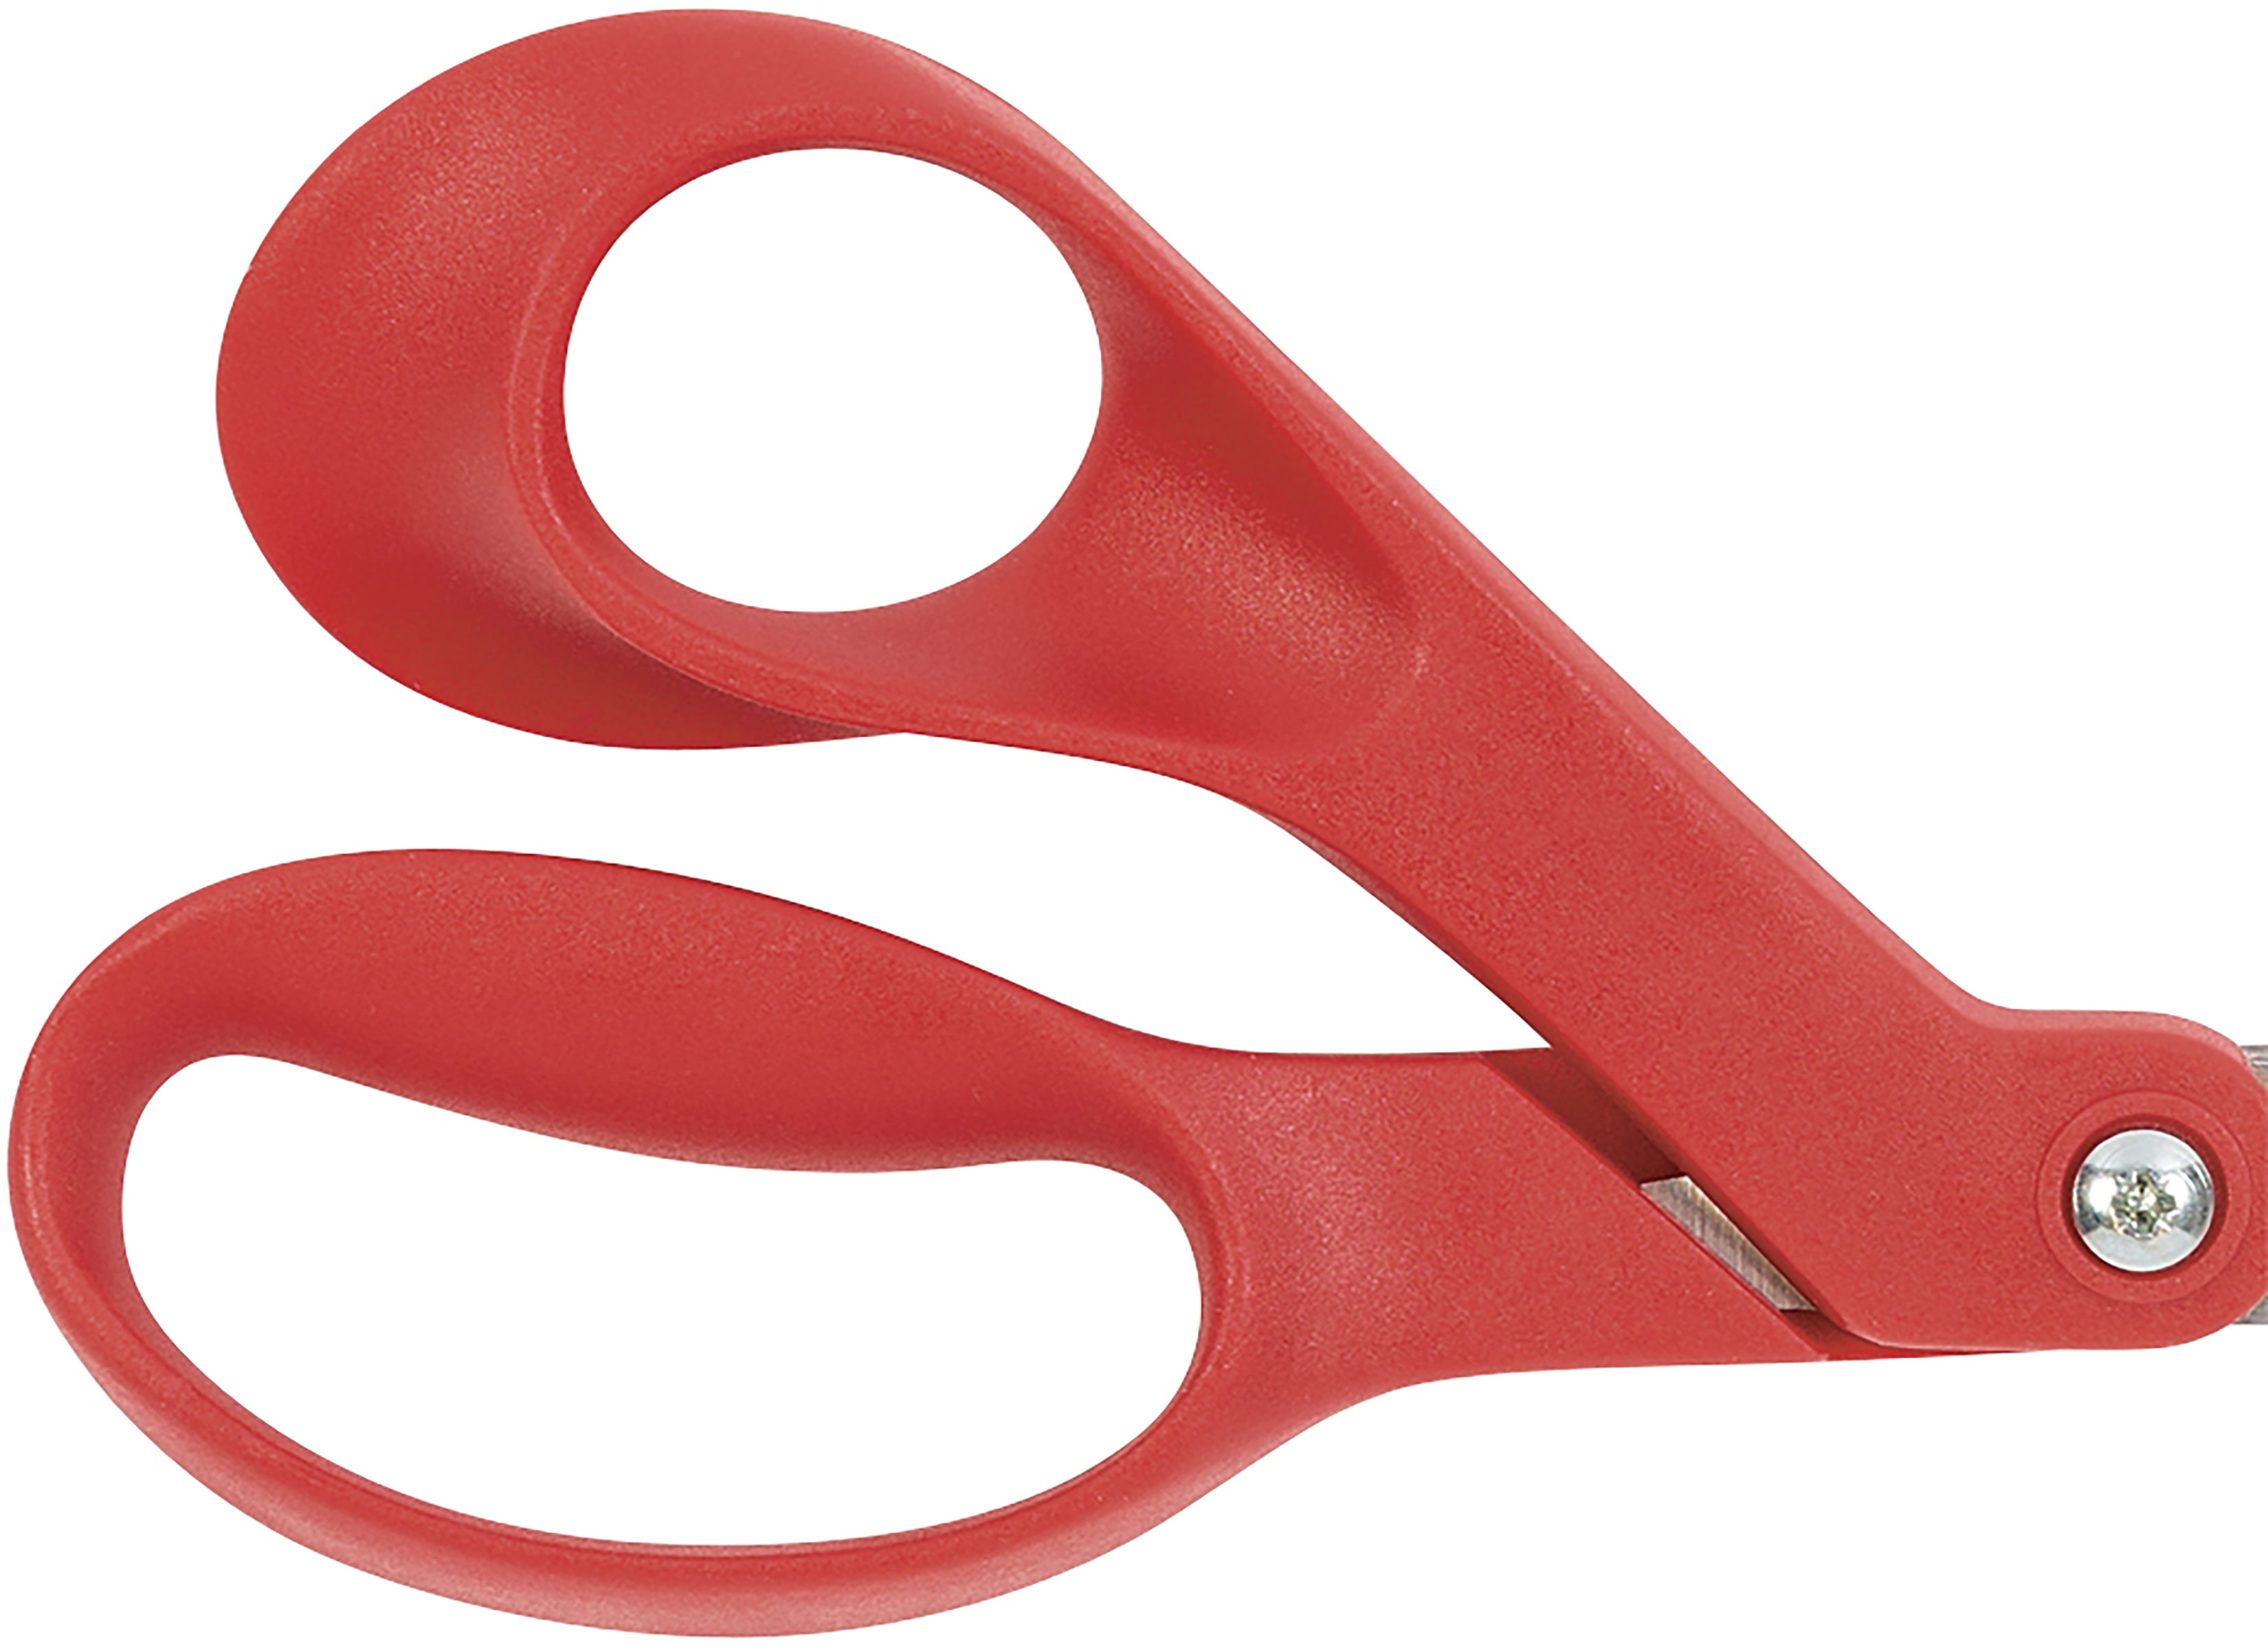 Fiskars, FSK1997001001, Student Scissors, 1 Each, Turquoise,Red